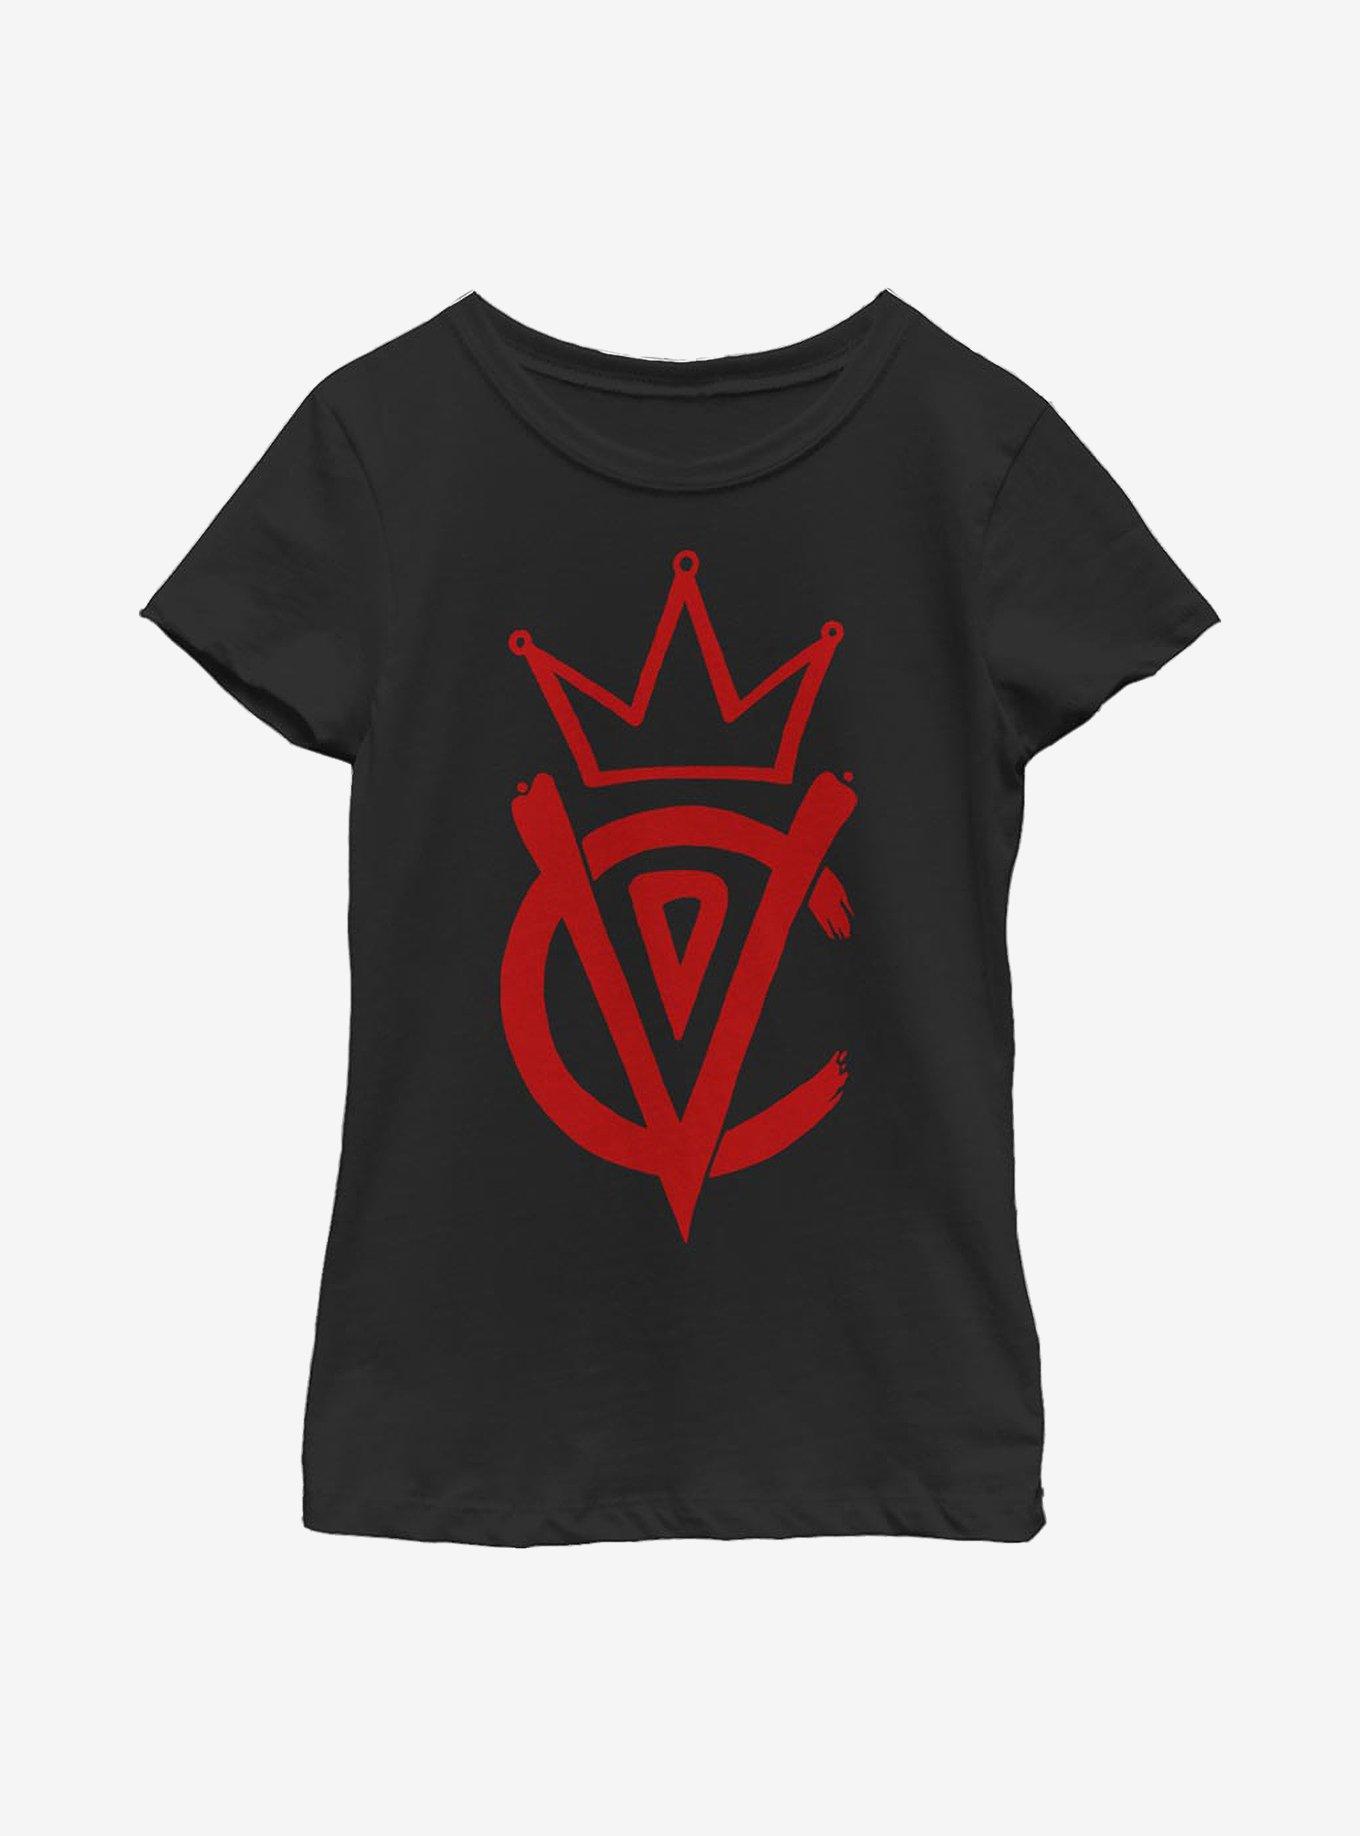 Disney Cruella Emblem Youth Girls T-Shirt, BLACK, hi-res